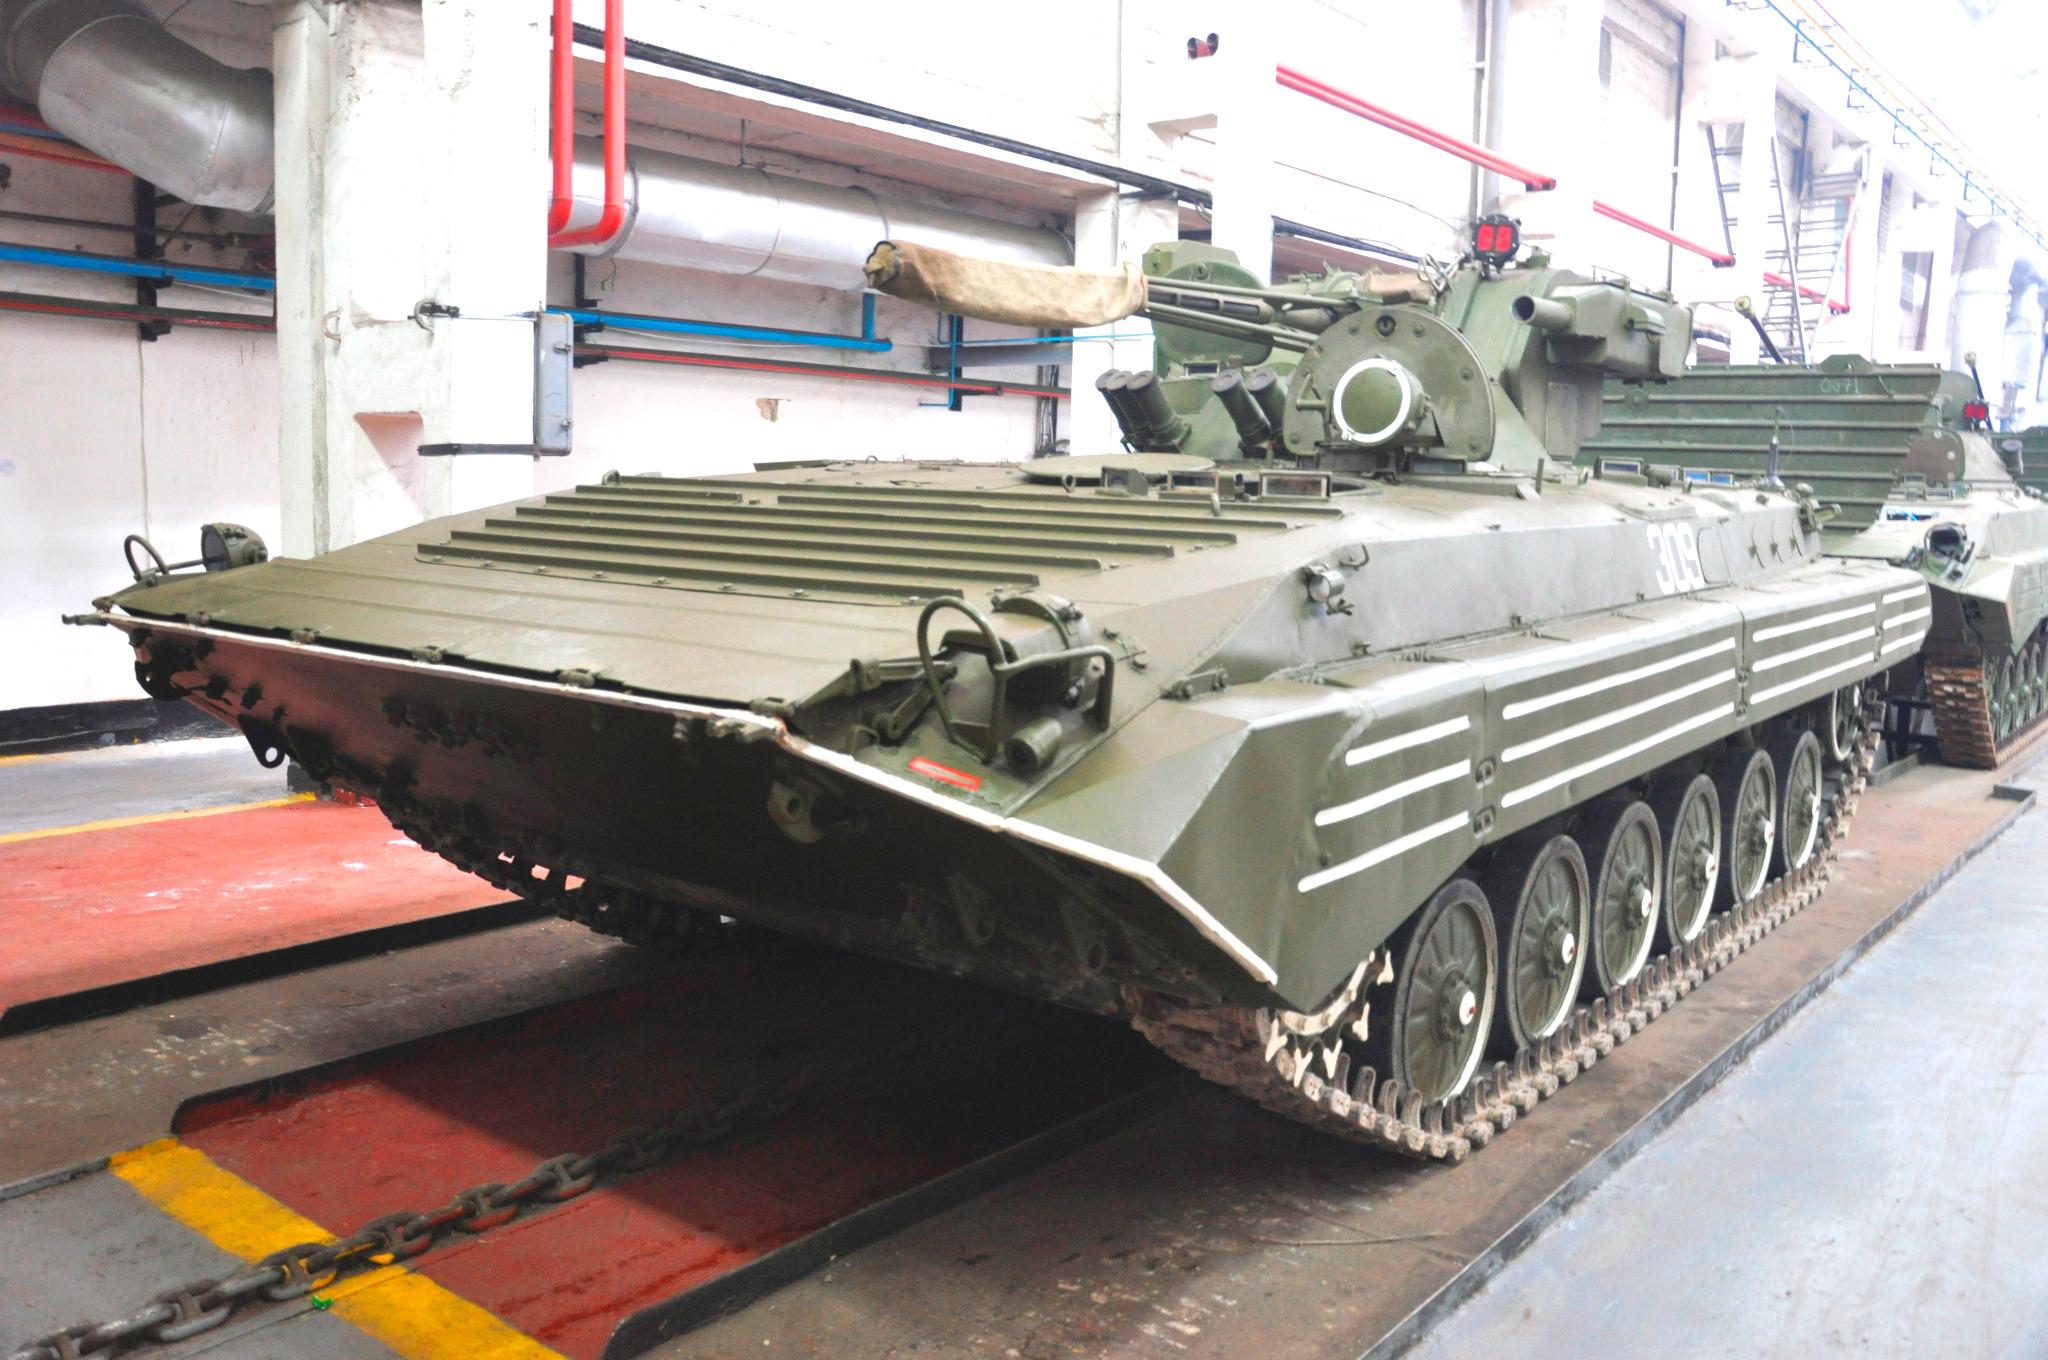 اوكرانيا ستنتج نسخه محدثه من مدرعه BMP-1  B-it2lHIMAAB7Ia